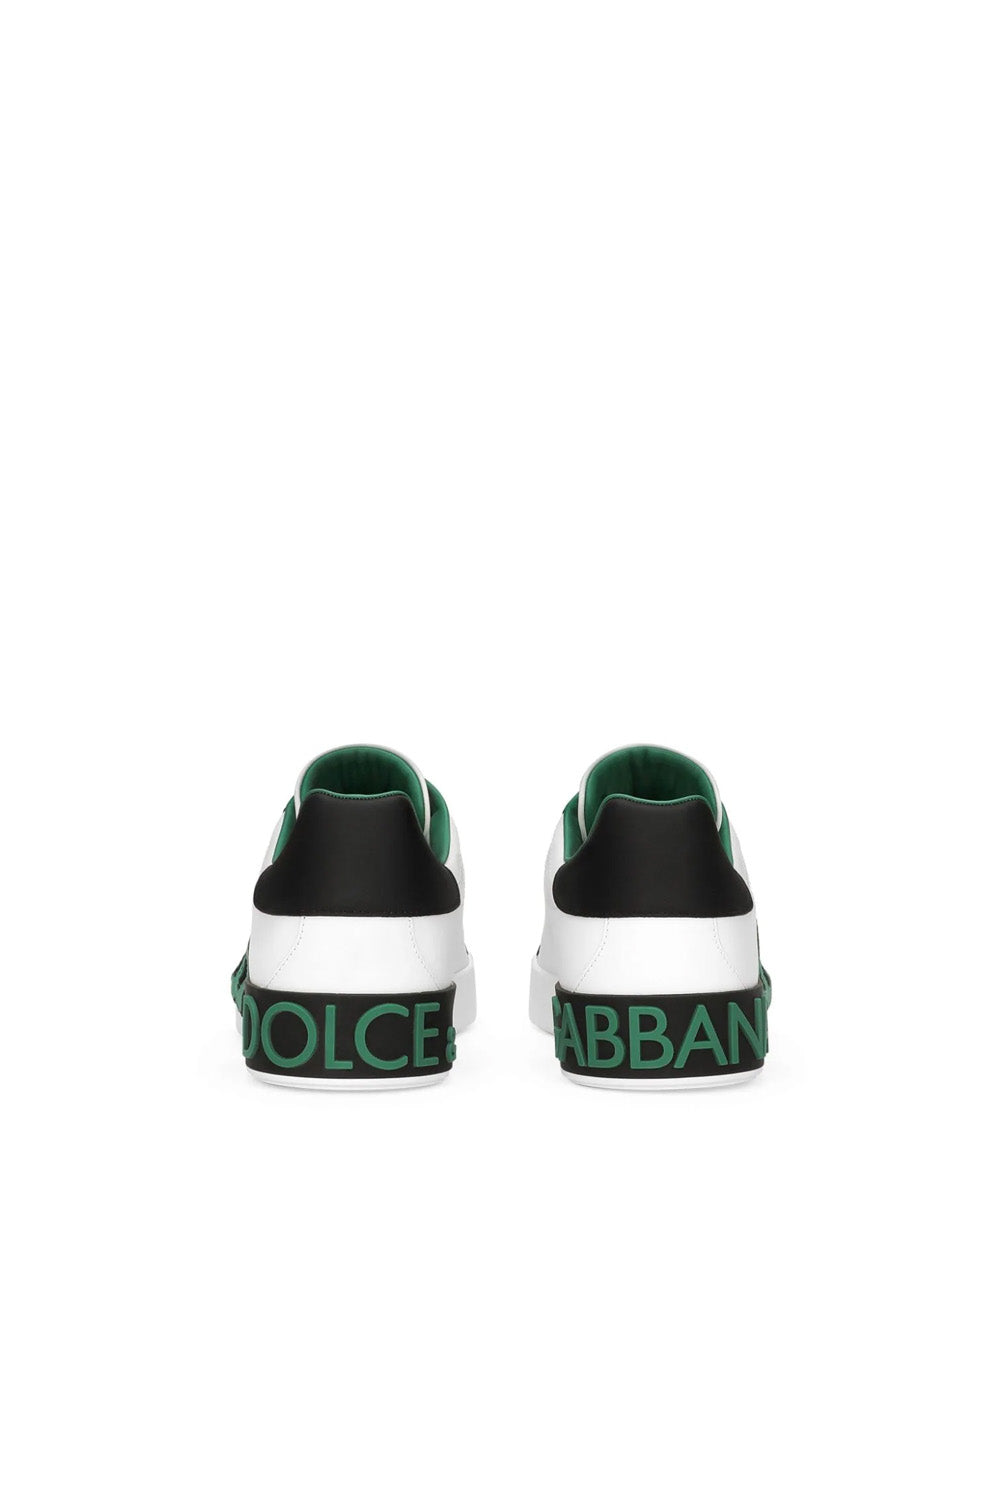 Dolce & Gabbana Portofino leather sneakers